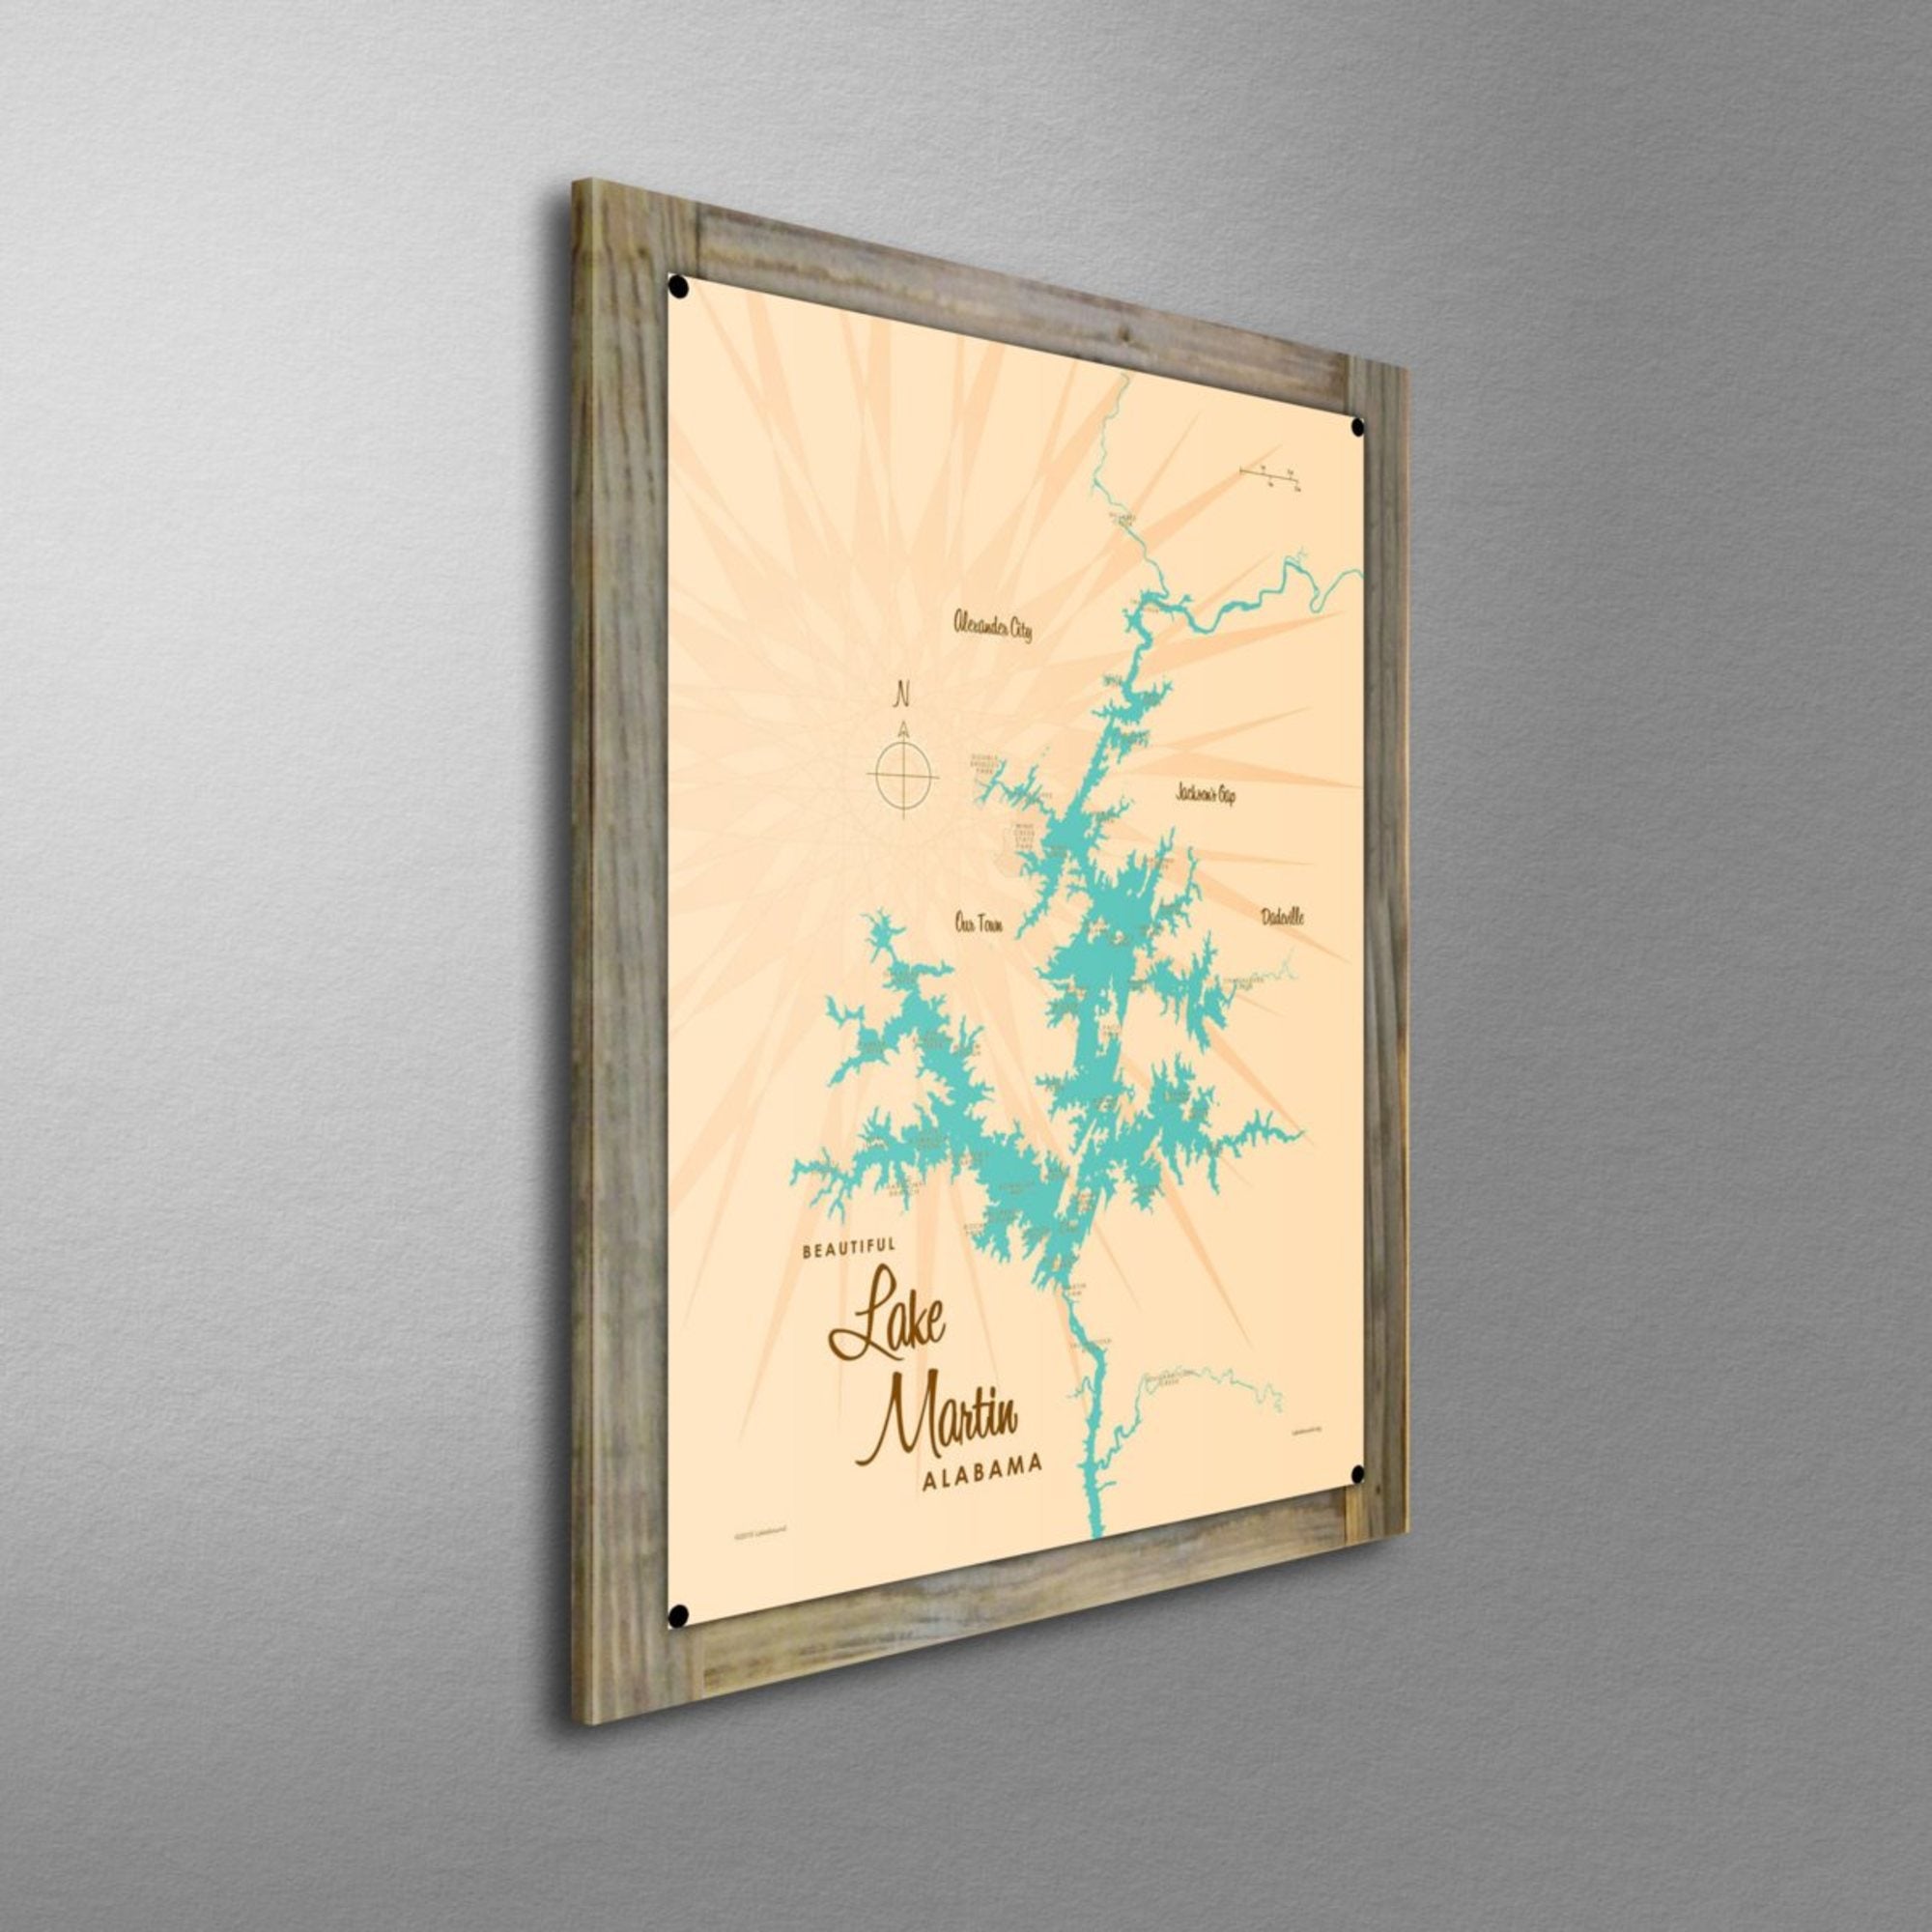 Lake Martin Alabama, Wood-Mounted Metal Sign Map Art